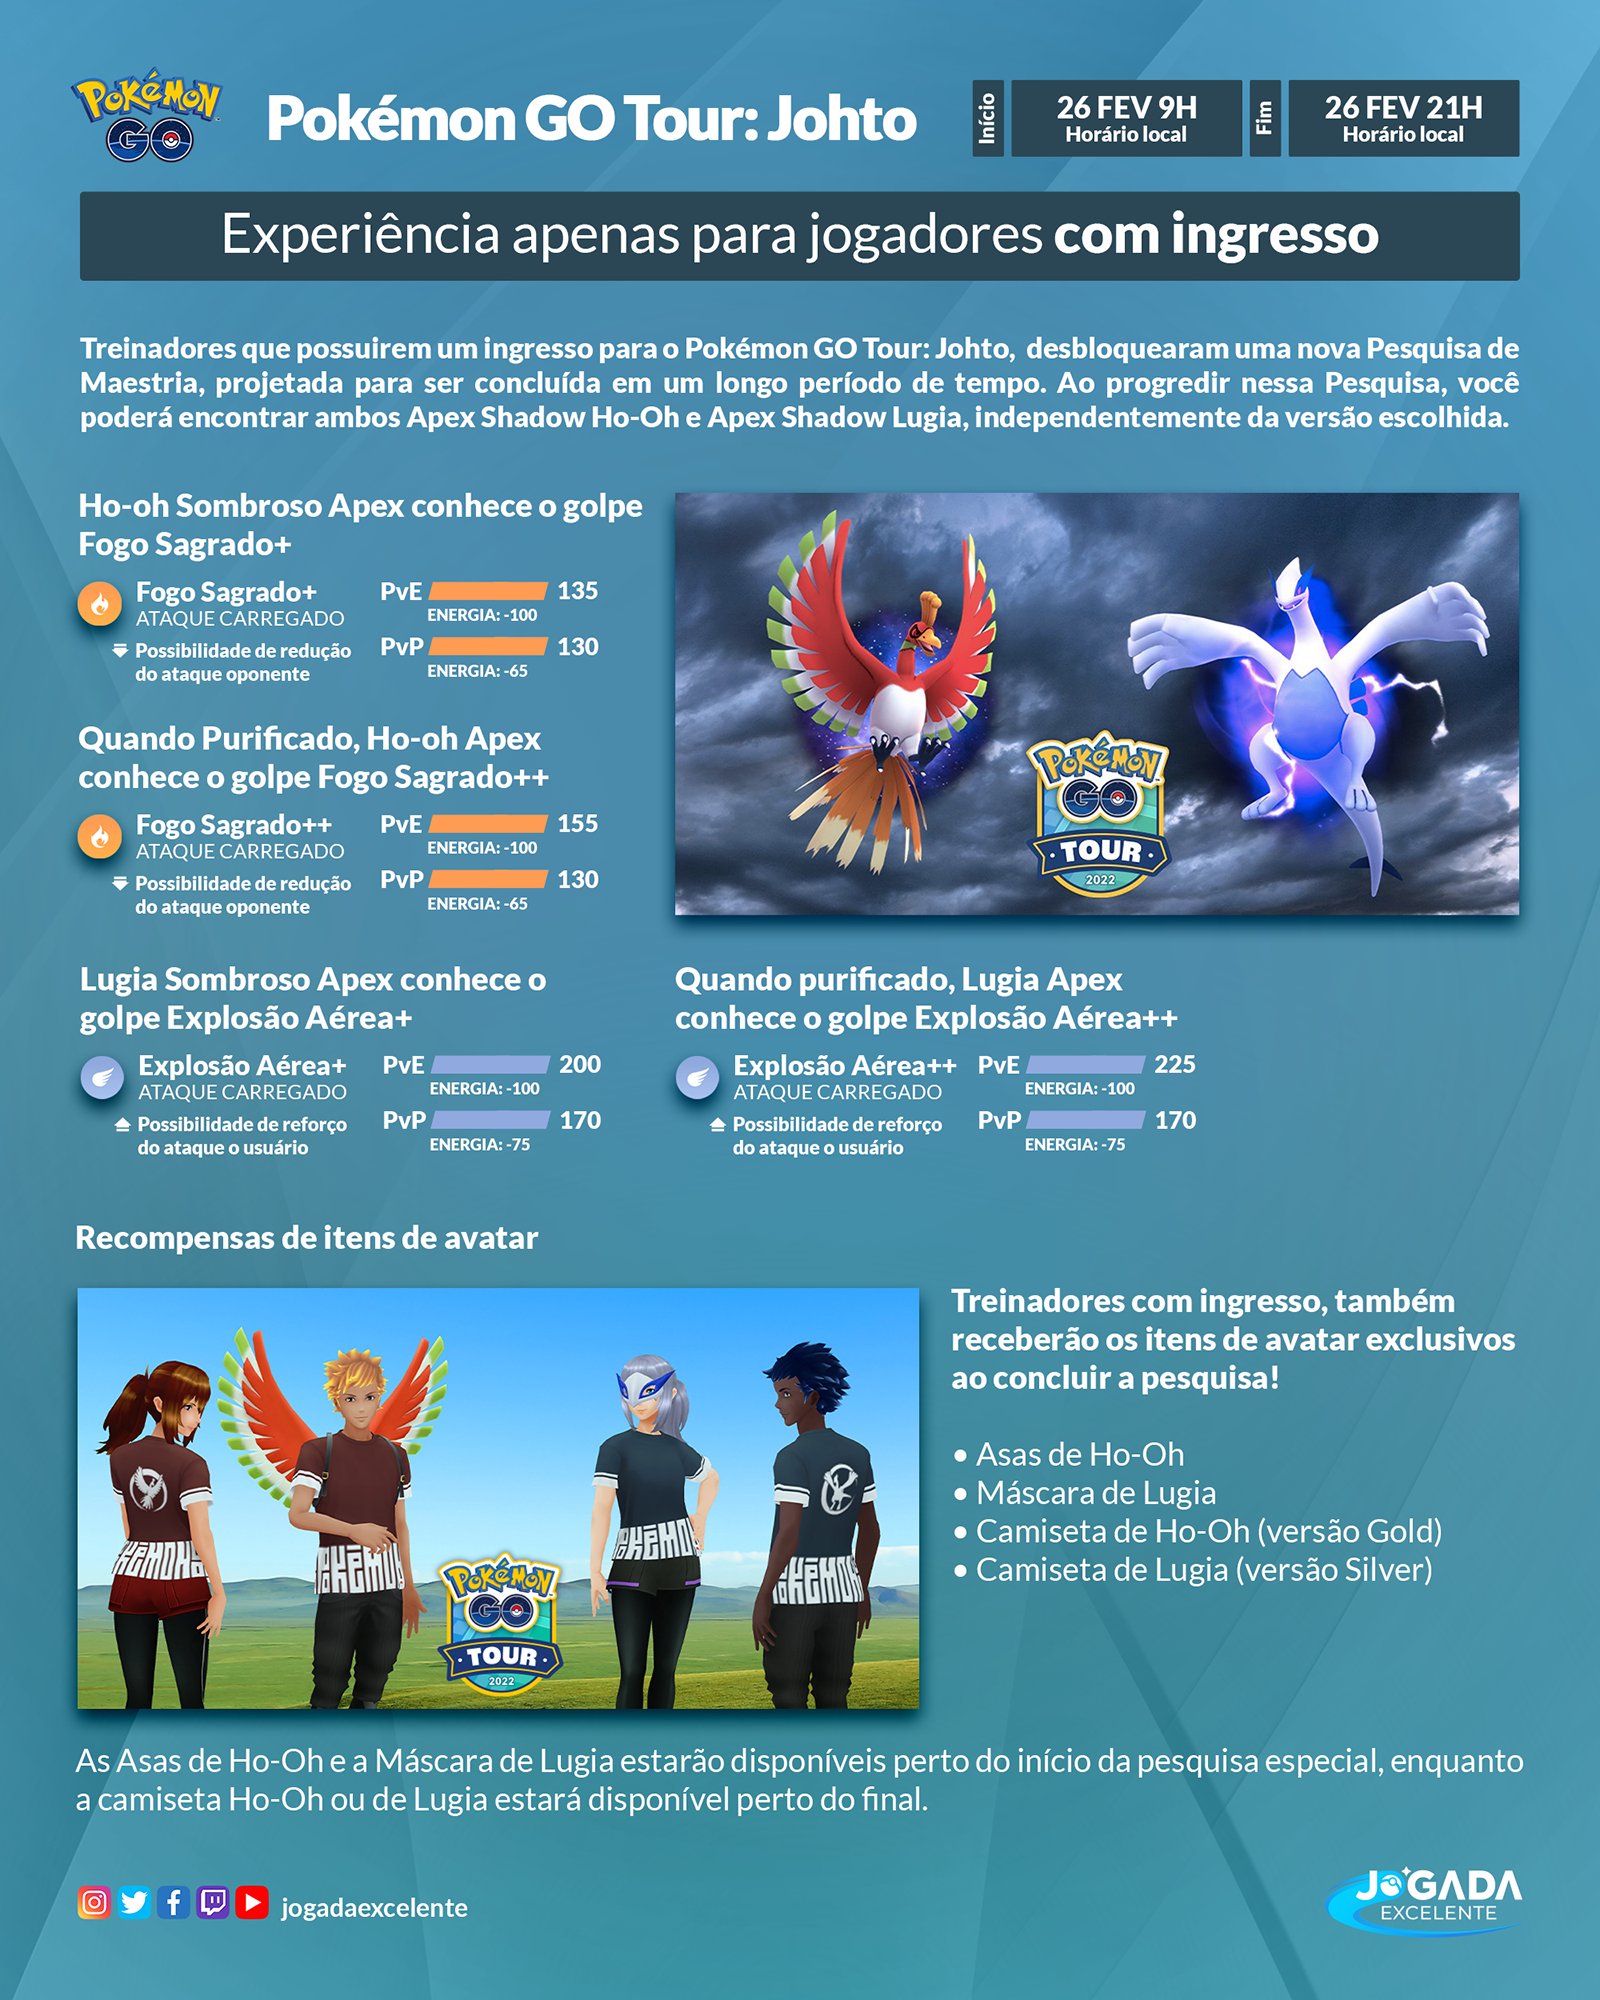 Pokémon Go Tour Johto - Diferenças entre as versões Gold e Silver